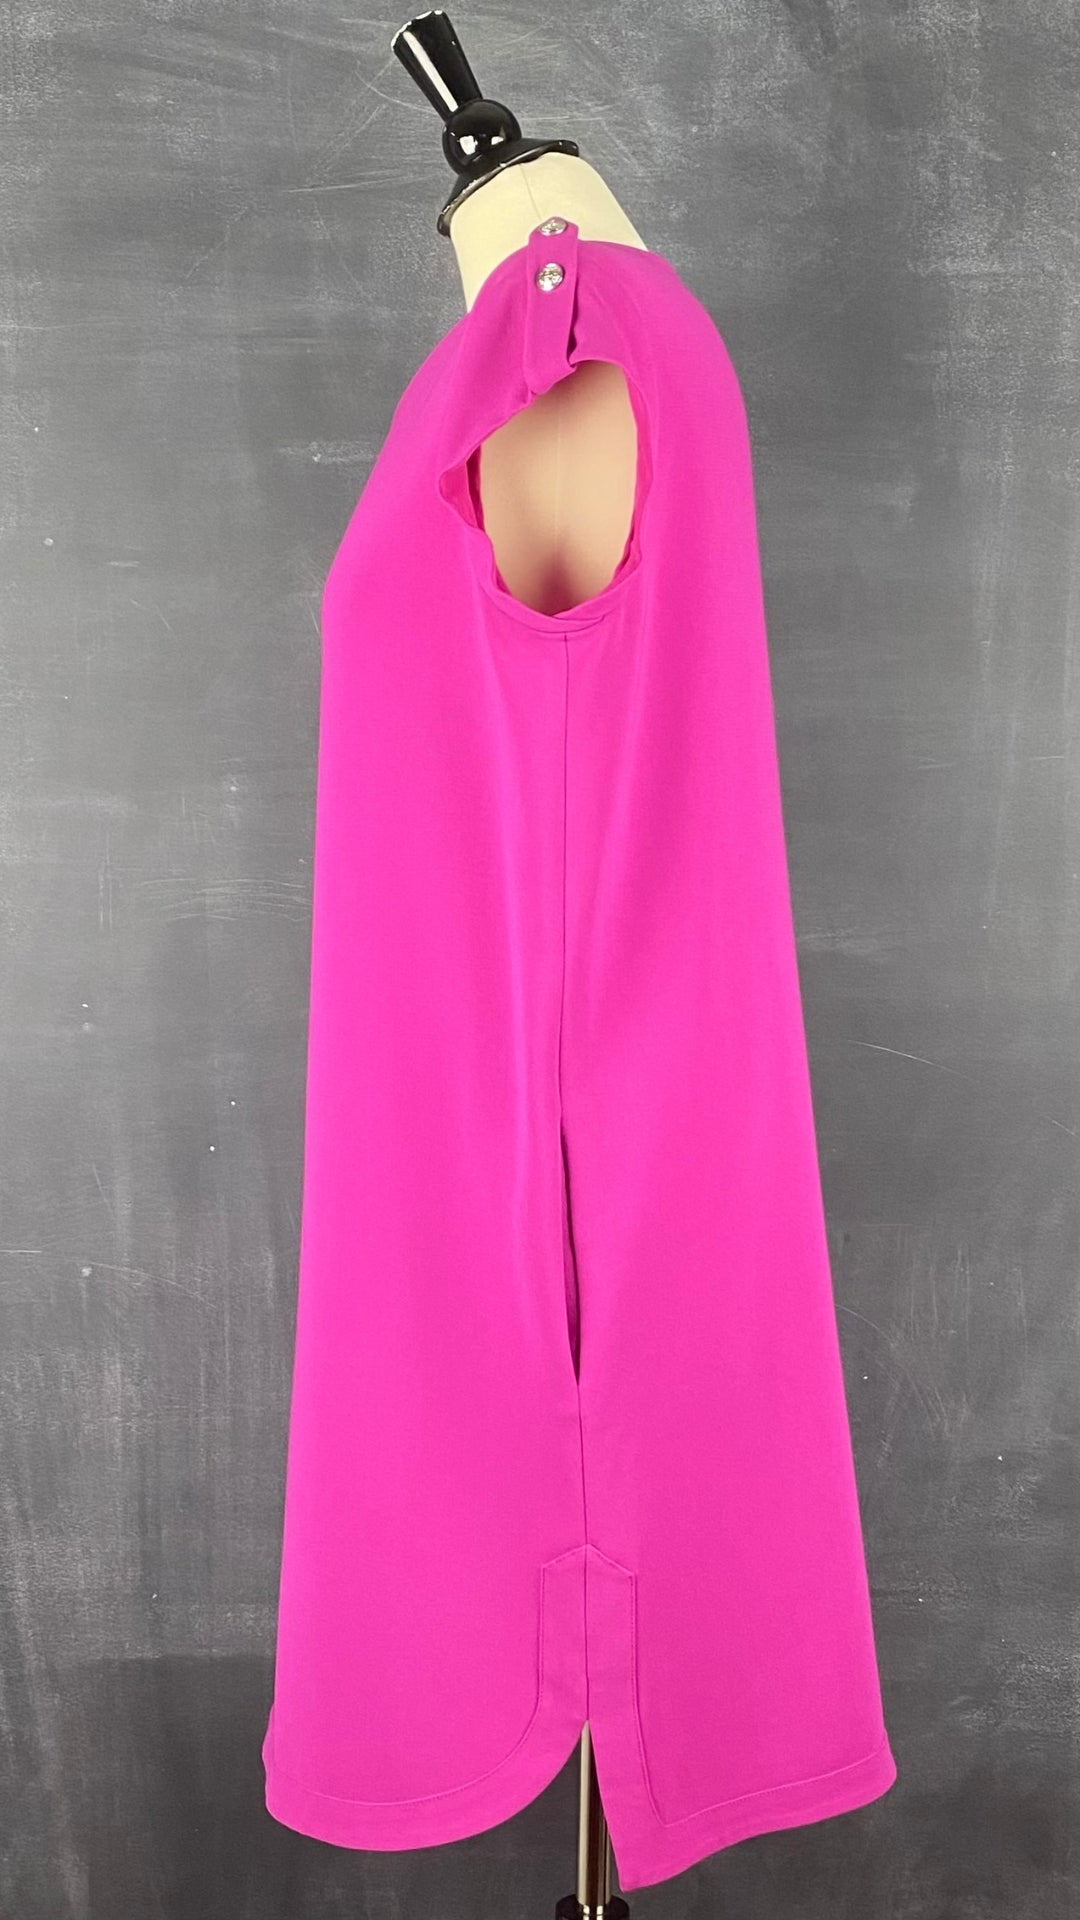 Robe ample avec poches et boutons argentés aux épaules, Diane von Furstenberg, taille 10. Vue de côté.